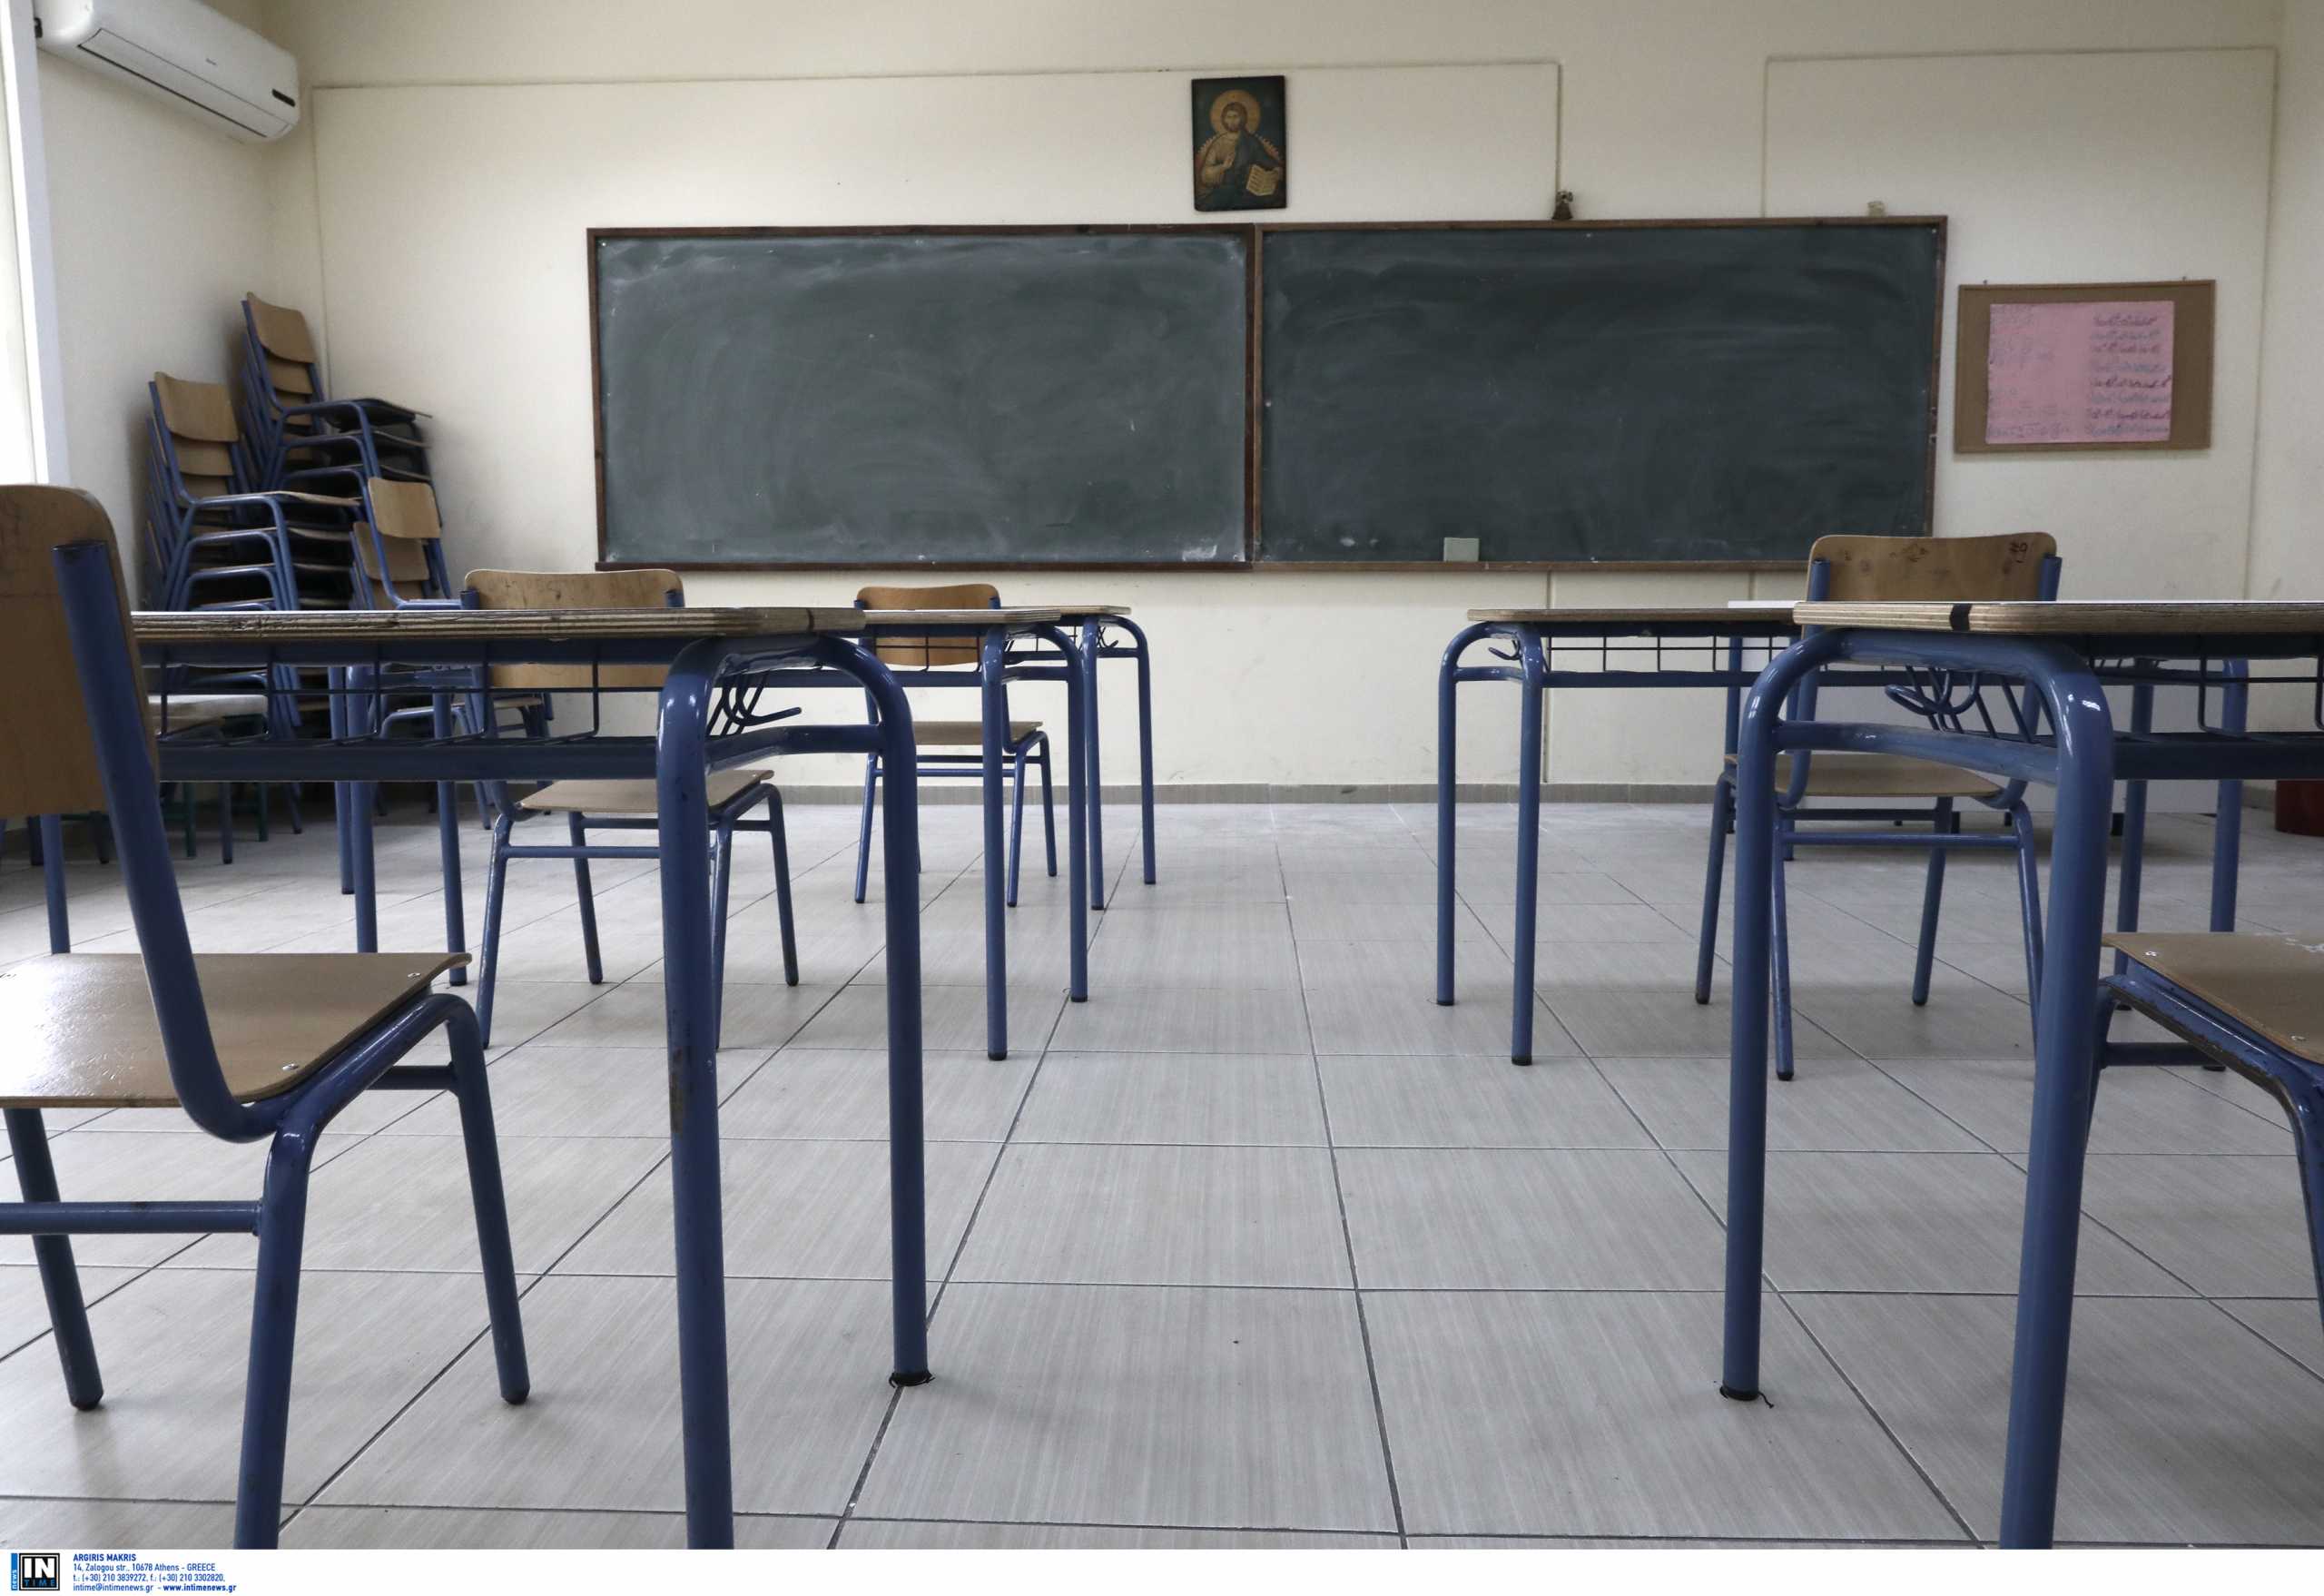 Κοζάνη: Μαθητής απειλούσε να πέσει στο κενό από τη σκεπή σχολείου επειδή πήρε αποβολή και τον διώχνουν